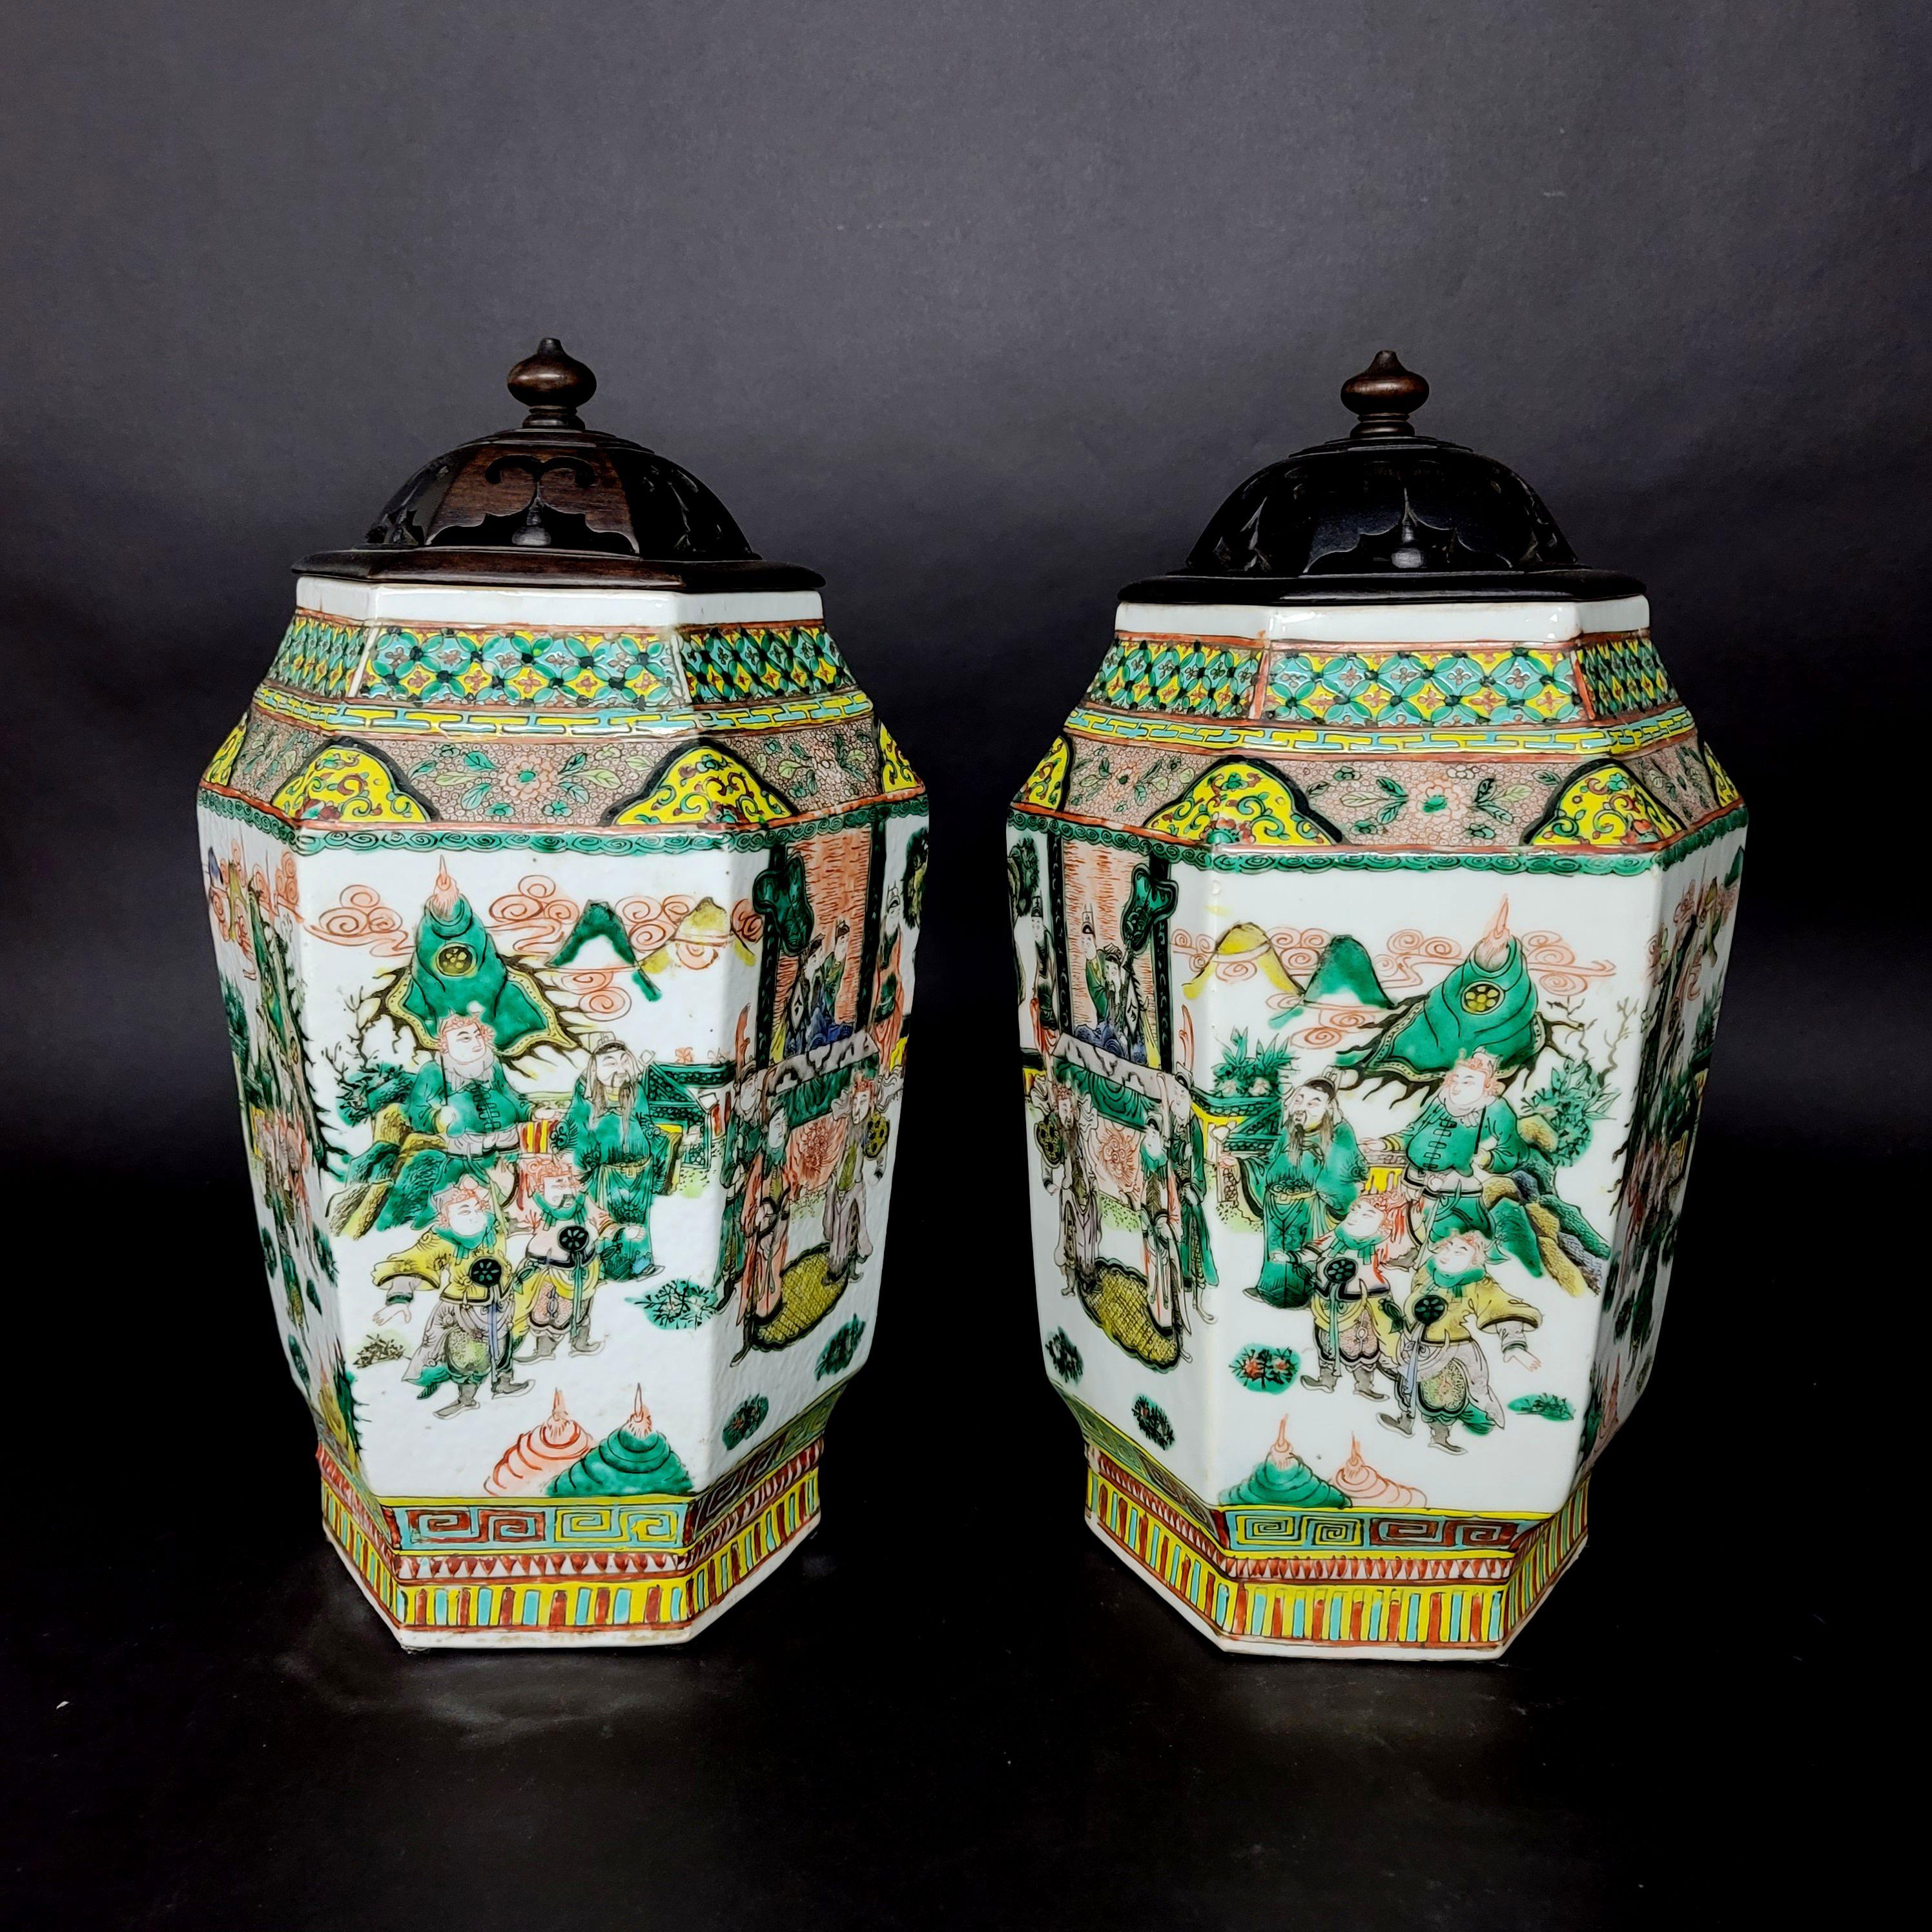 Eine wirklich feine handbemalte passende Bilder von Porzellan-Vasen, erstaunliche Qualität aus der Qing-Dynastie Famille rose polychrome dekoriert Tafeln von höfischen Beschäftigungen mit geschnitzten Hartholz Deckel.

 